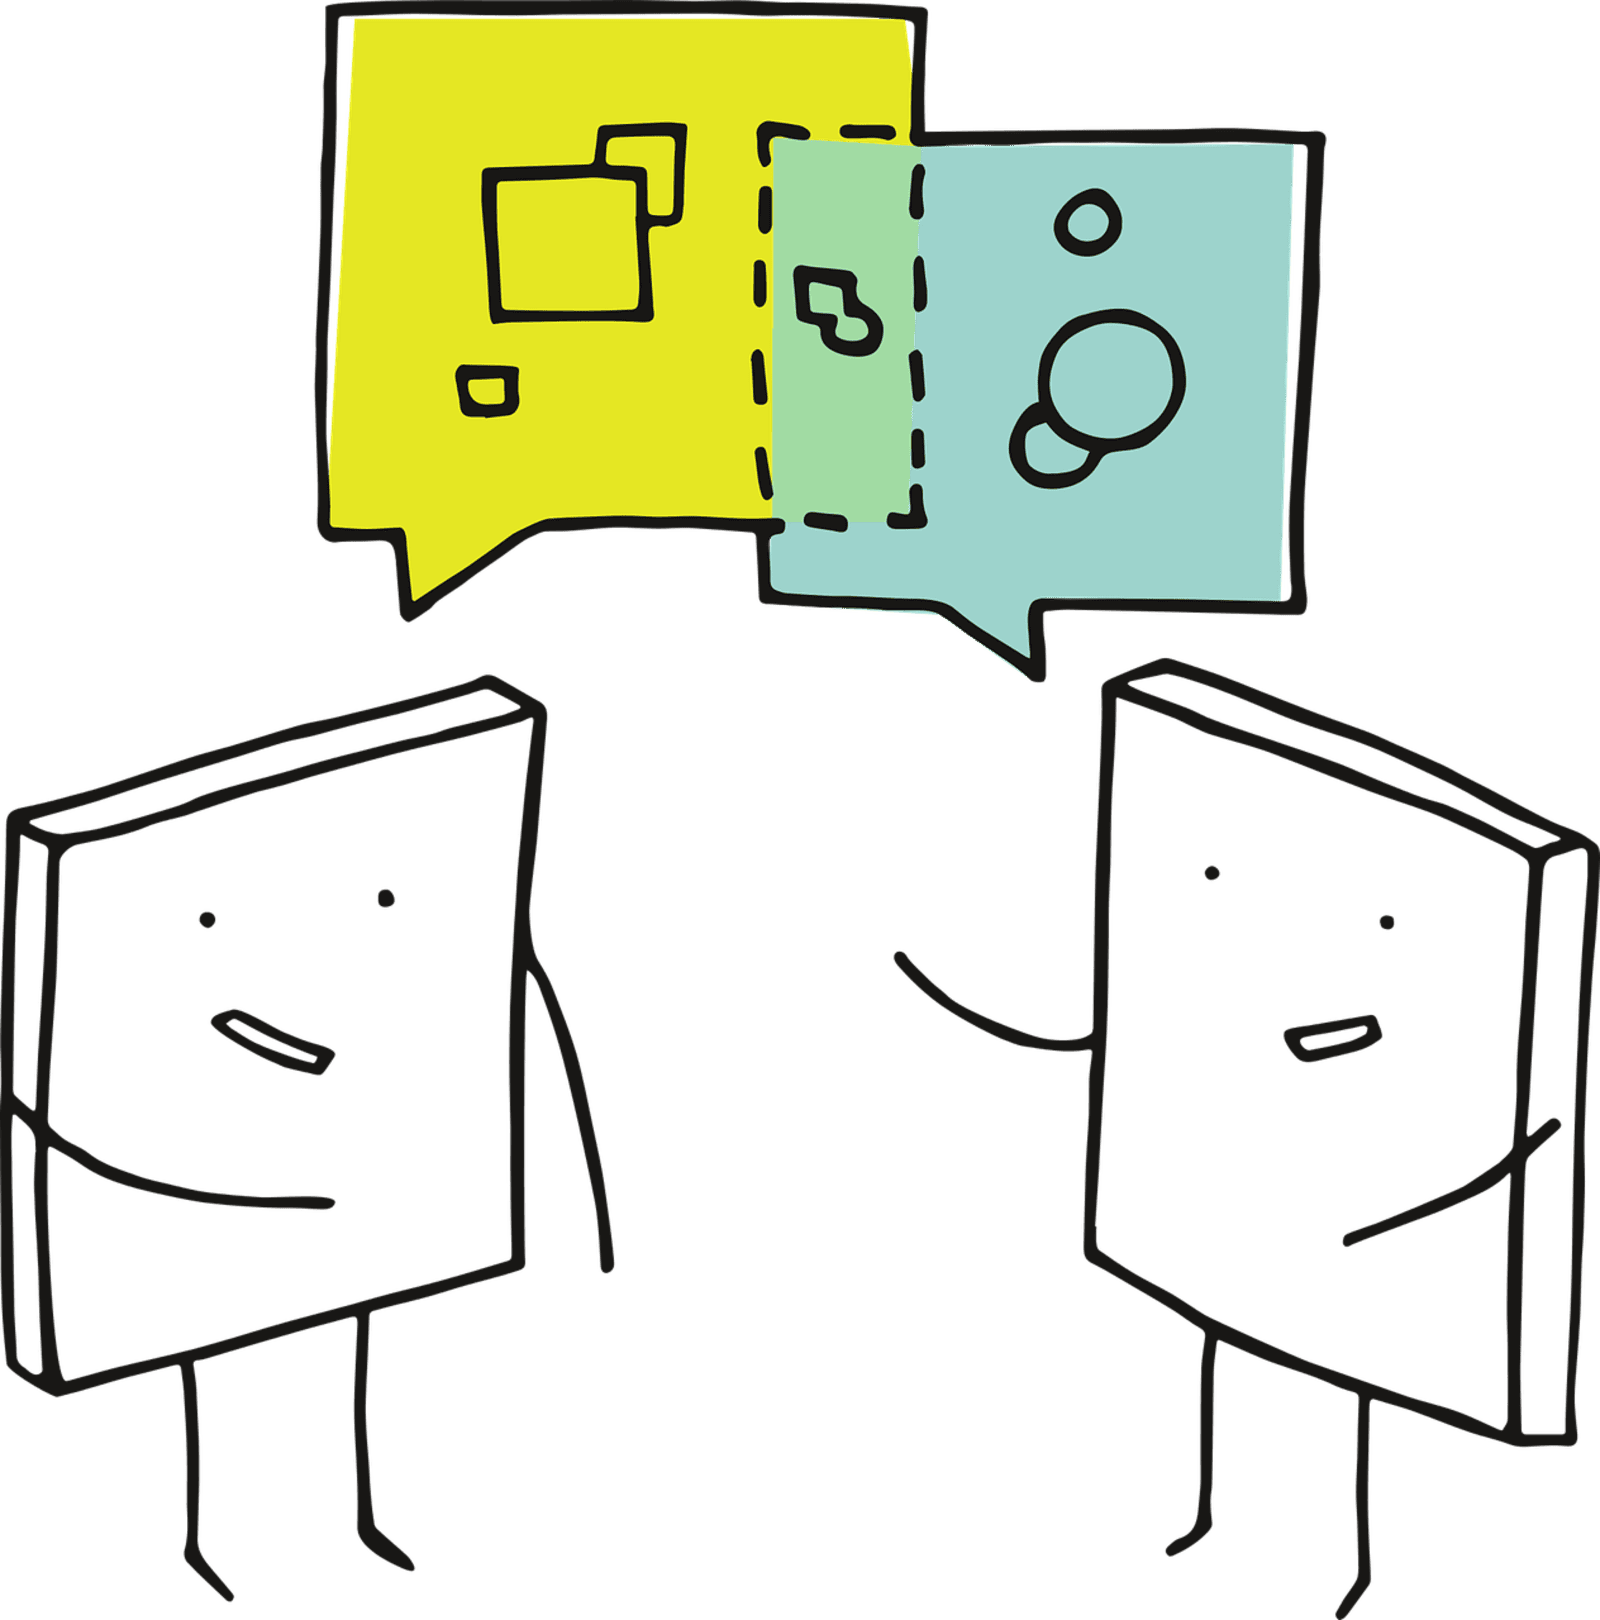 Illustration: zwei Strichmännchen finden im Dialog eine gemeinsame Schnittmenge